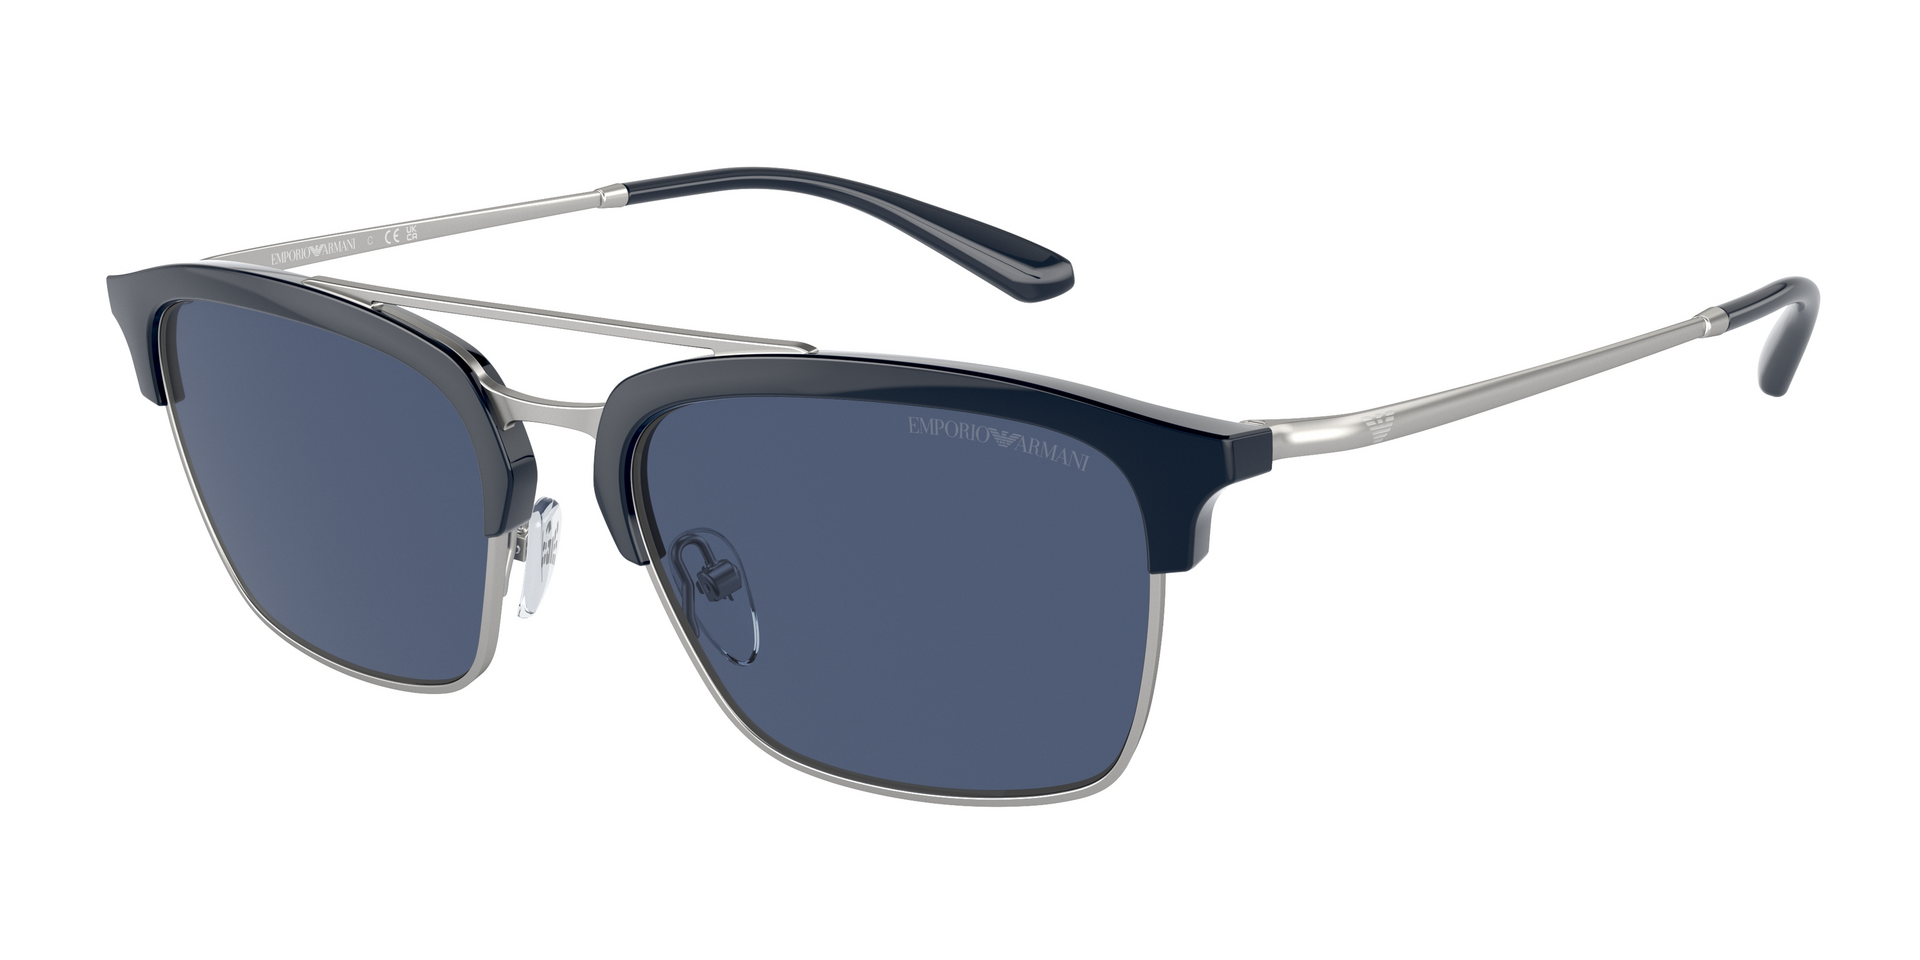 Das Bild zeigt die Sonnenbrille EA4228 304580 von der Marke Emporio Armani in blau/silber.